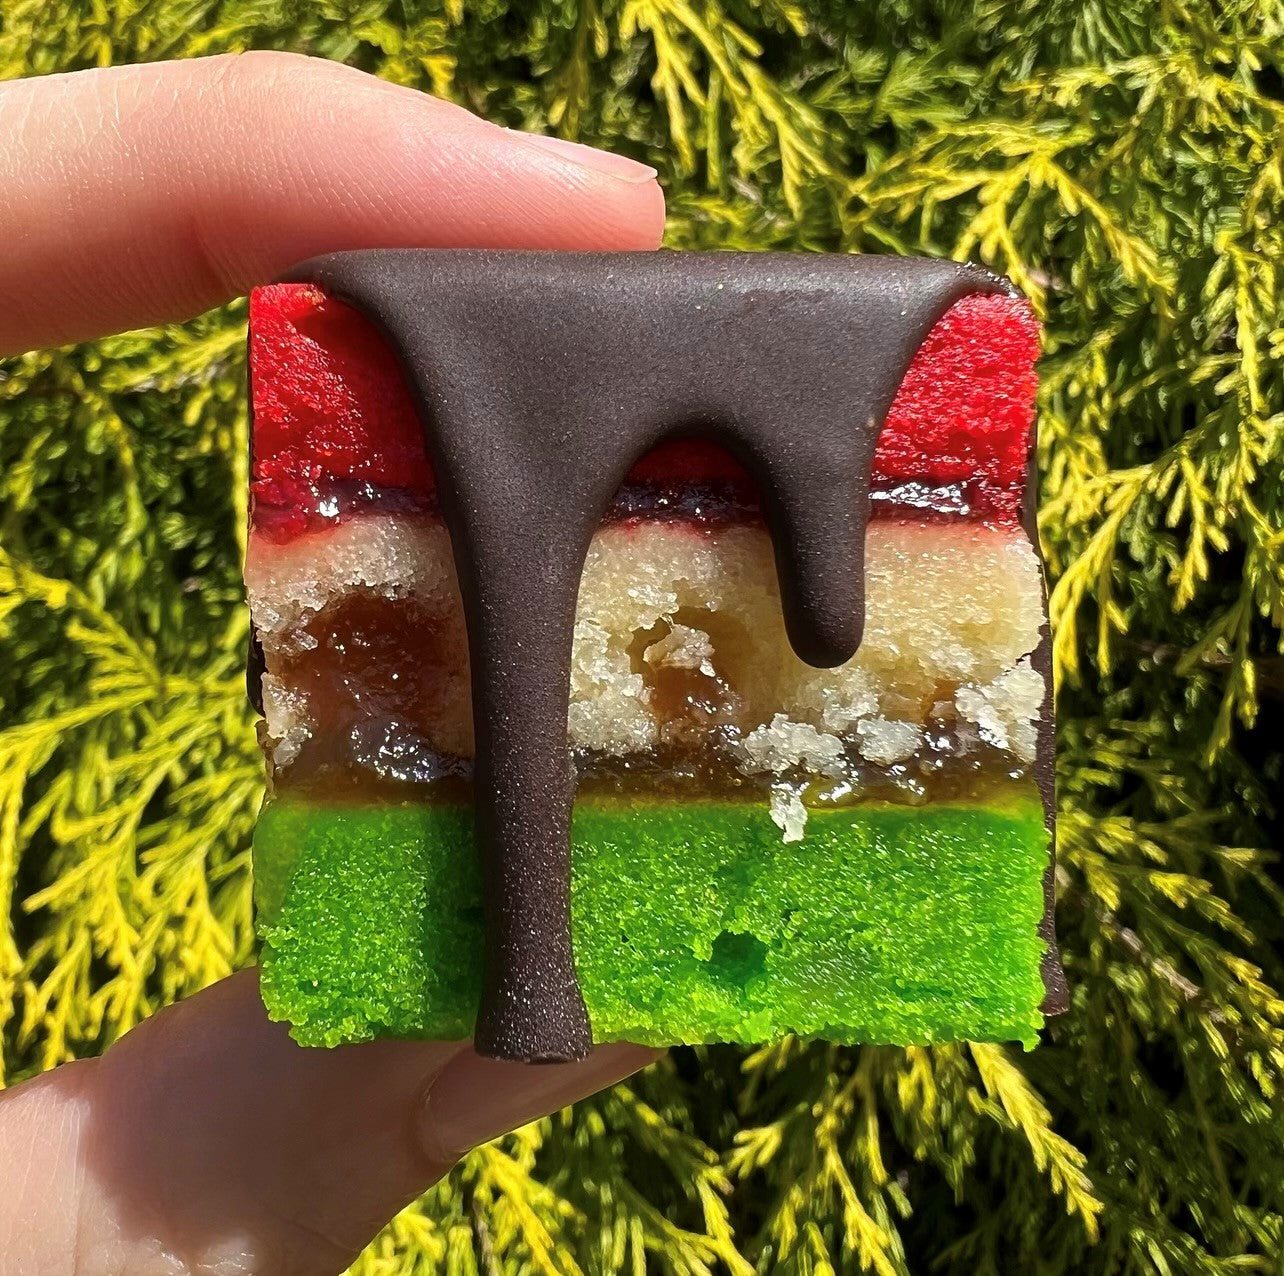 How to Make a Rainbow Cake Recipe - 7 Layers - Veena Azmanov